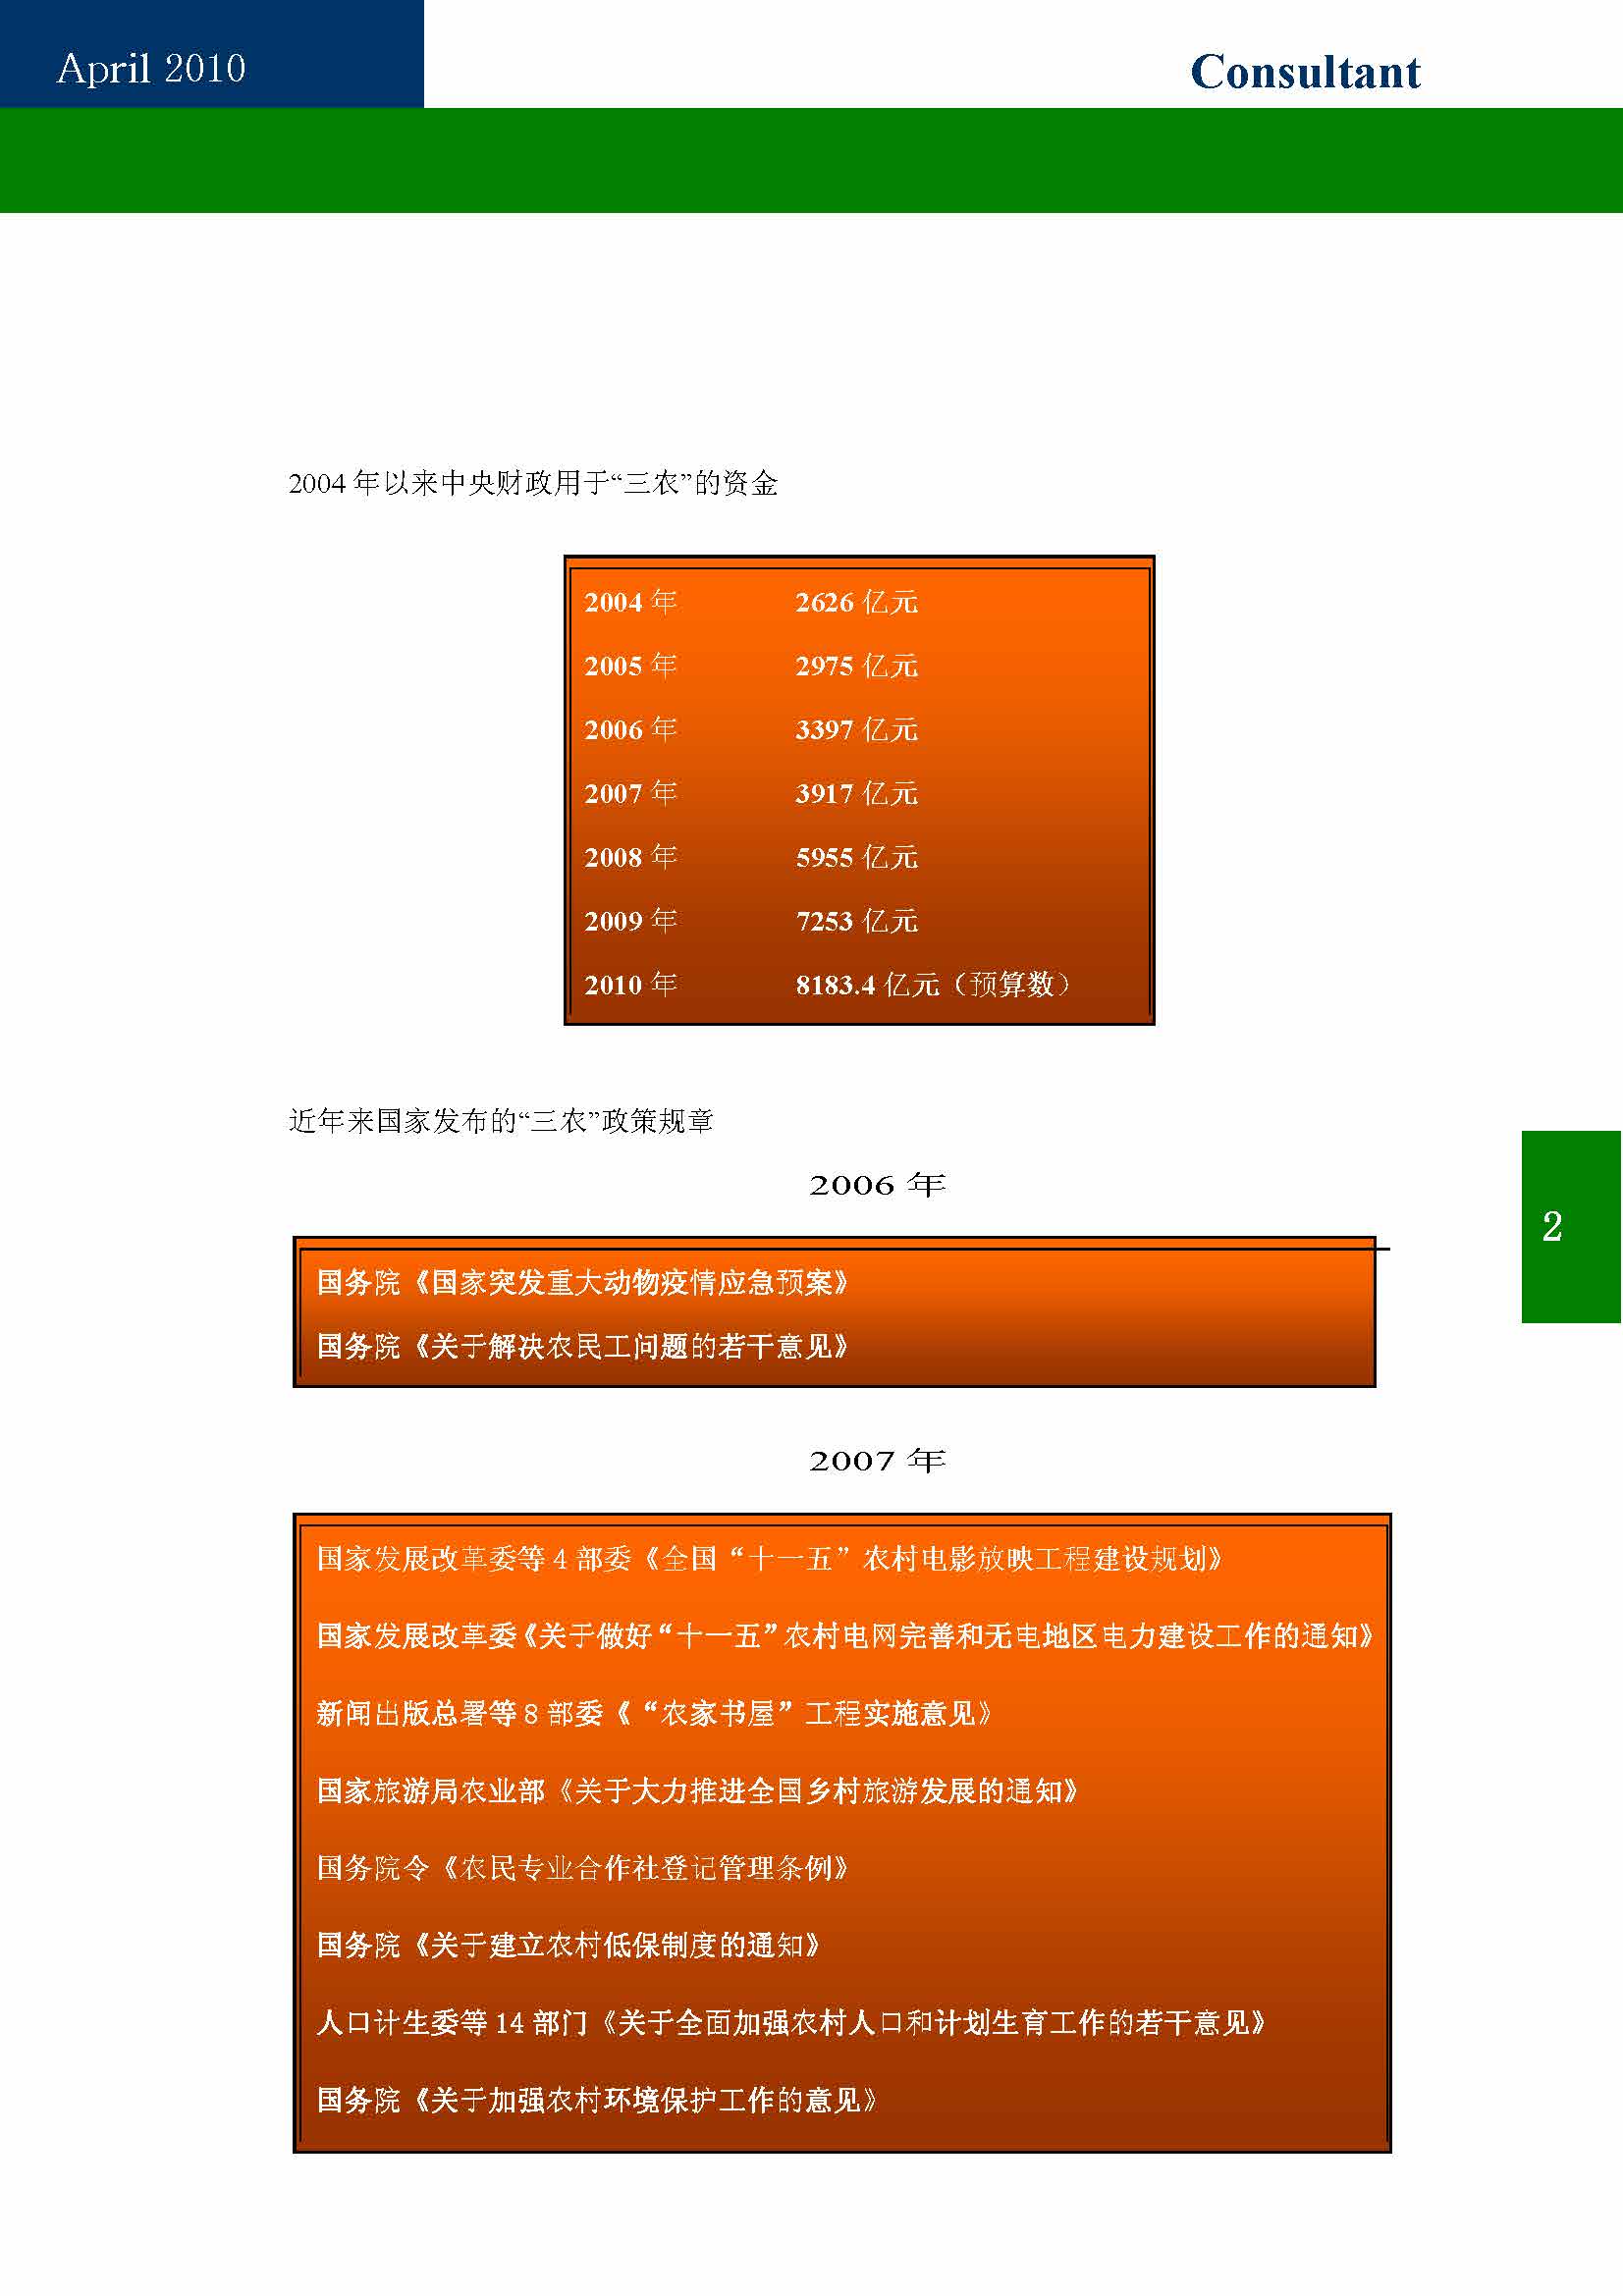 9中国科技咨询协会第九期会刊_页面_04.jpg